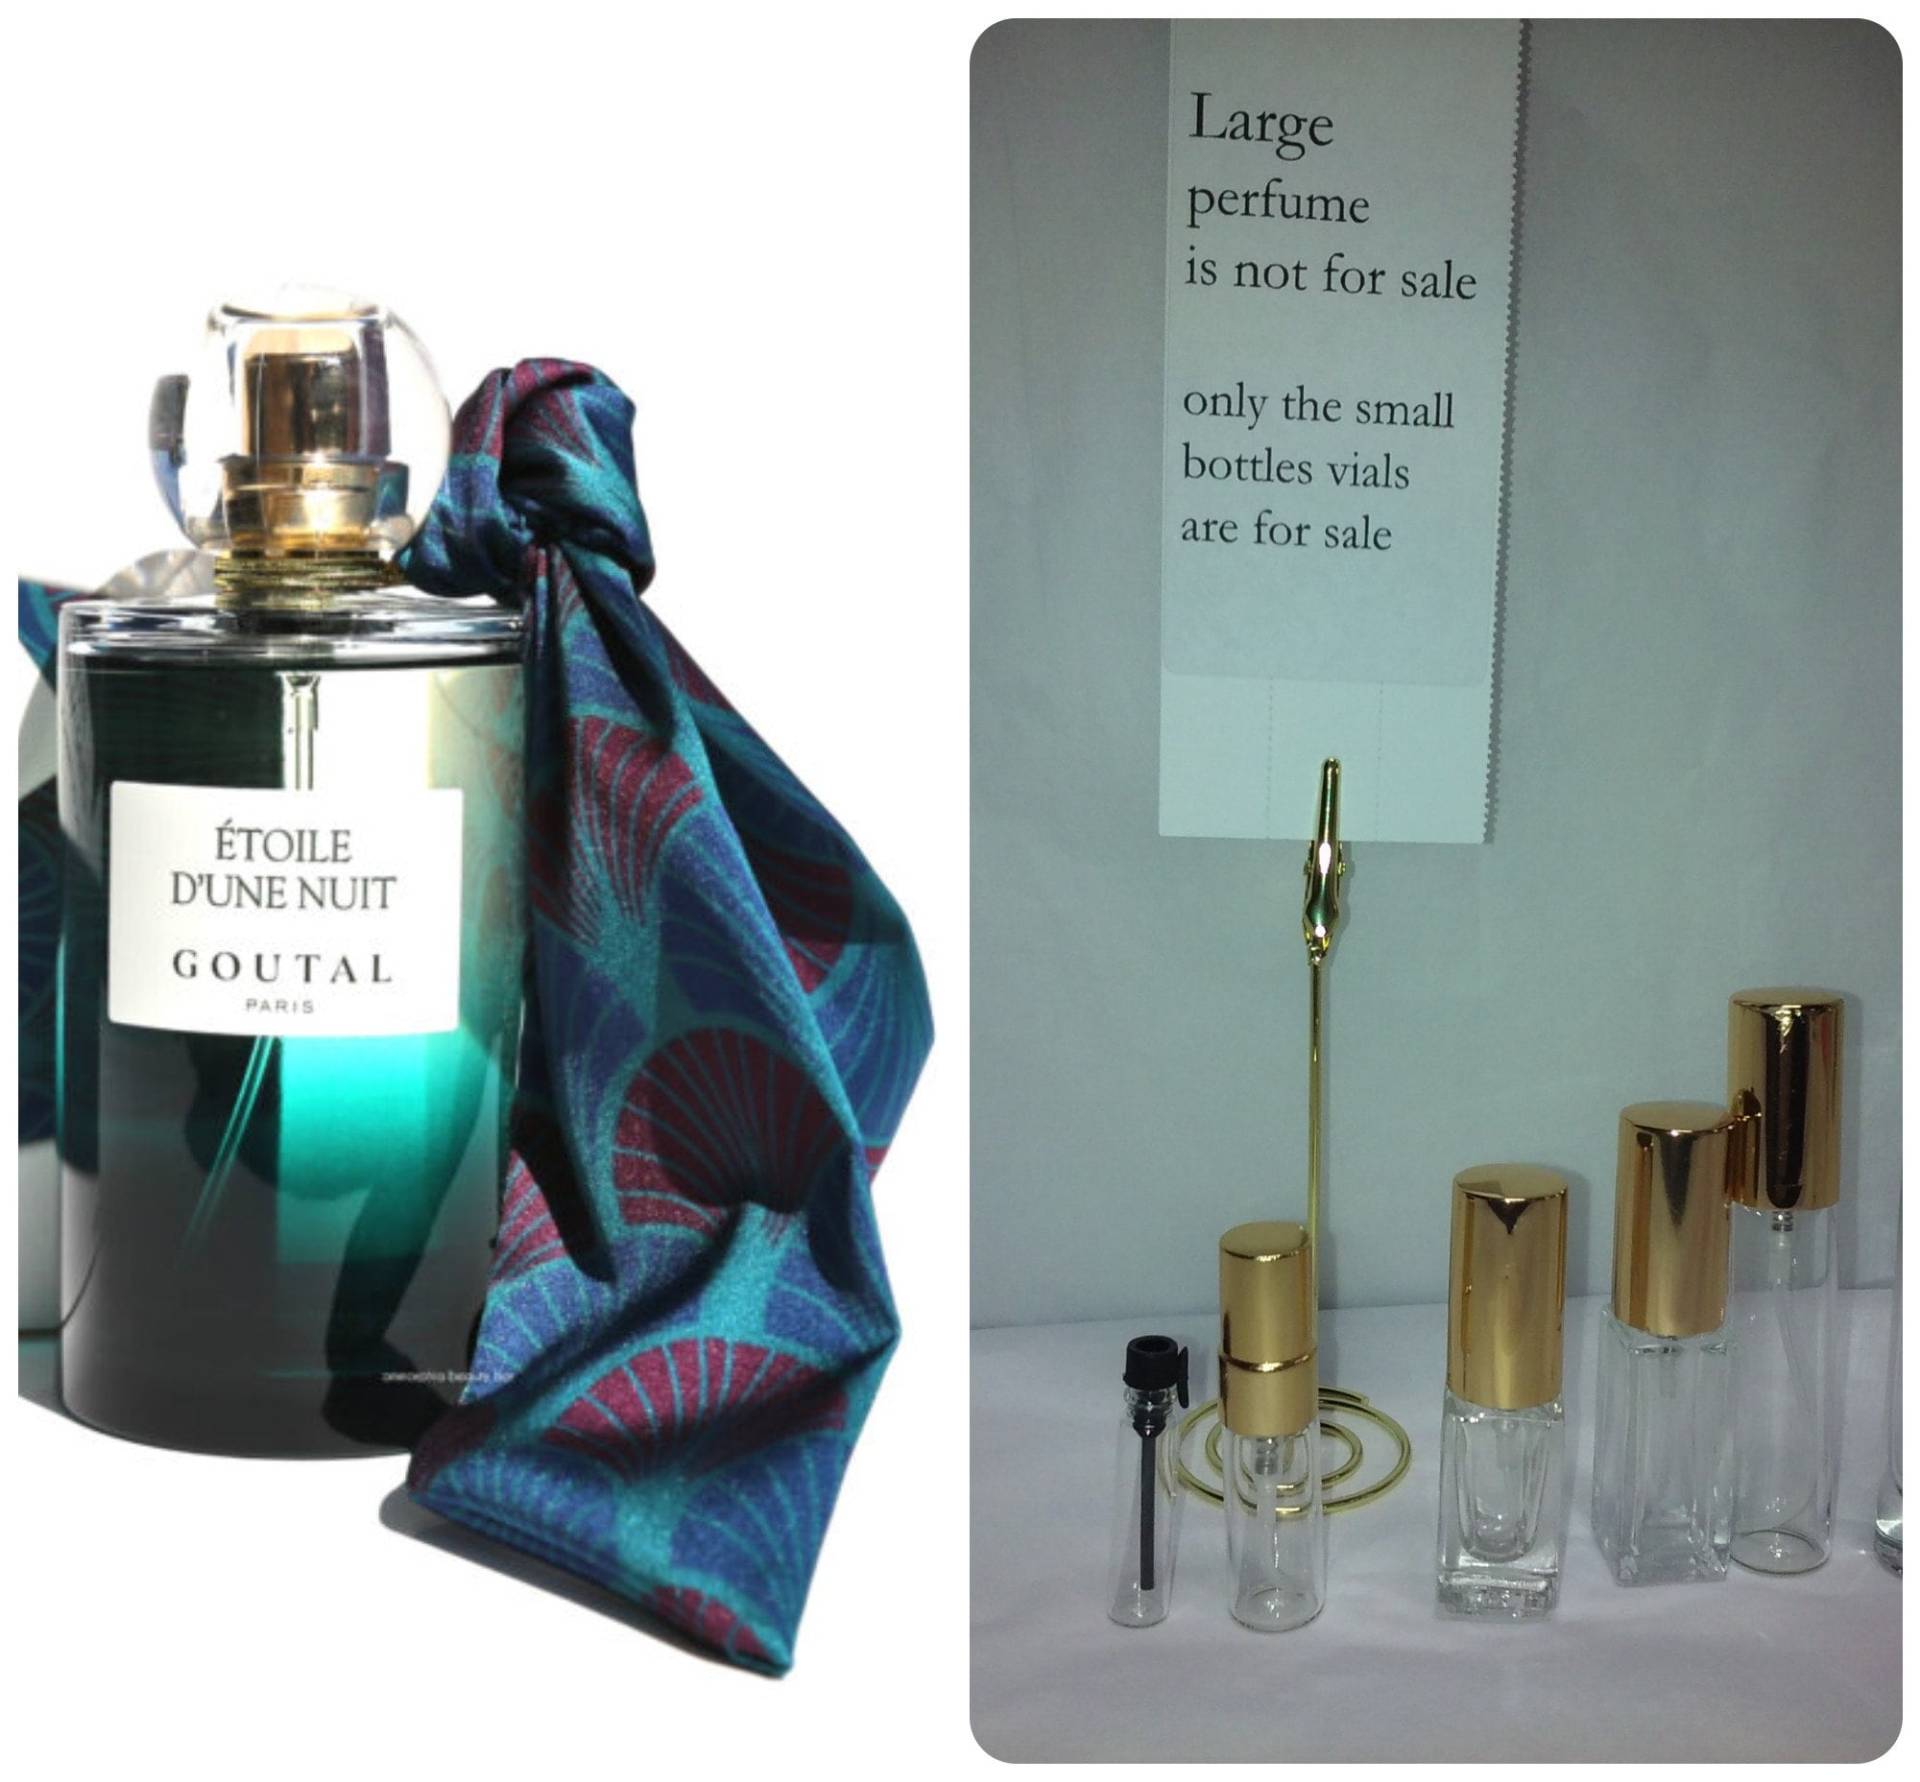 Etoile D Une Nuit Von Goutal Großes Parfum Ist Nicht Zum Verkauf Wählen Sie Eine von Etsy - somersetantiques1